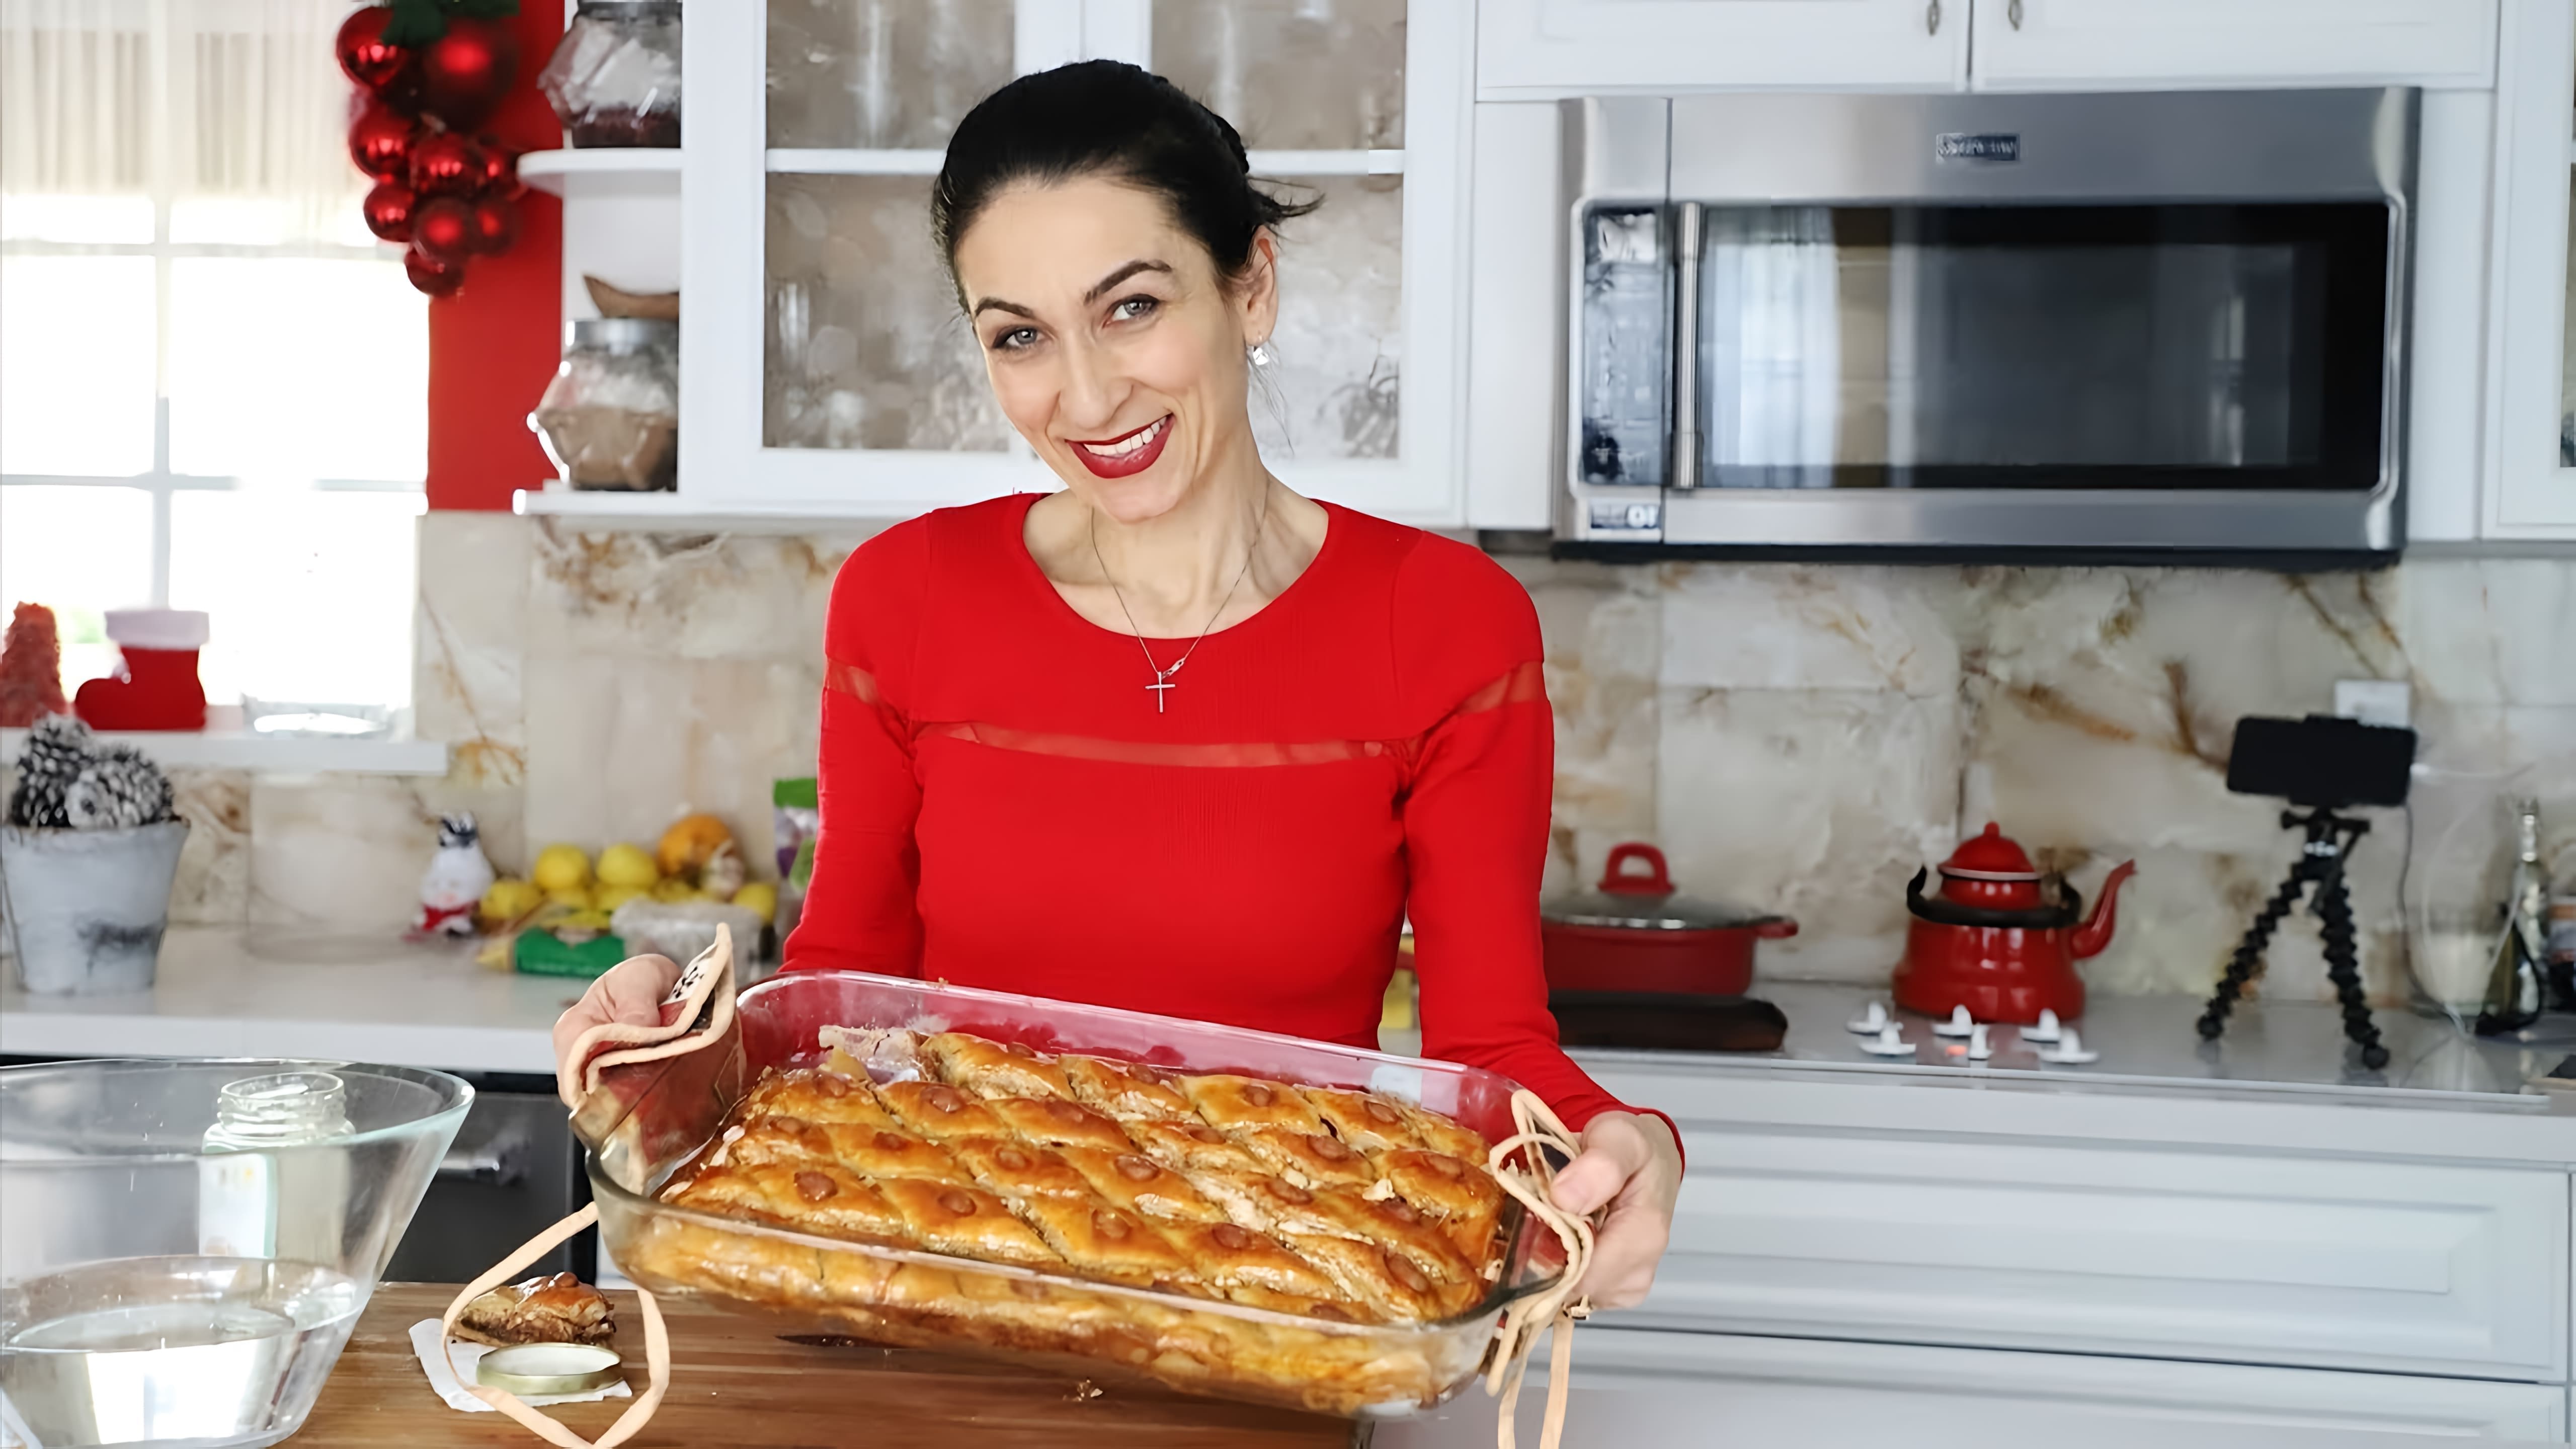 Видео как приготовить пахлаву, традиционный армянский десерт из слоев фило-теста и ореховой начинки